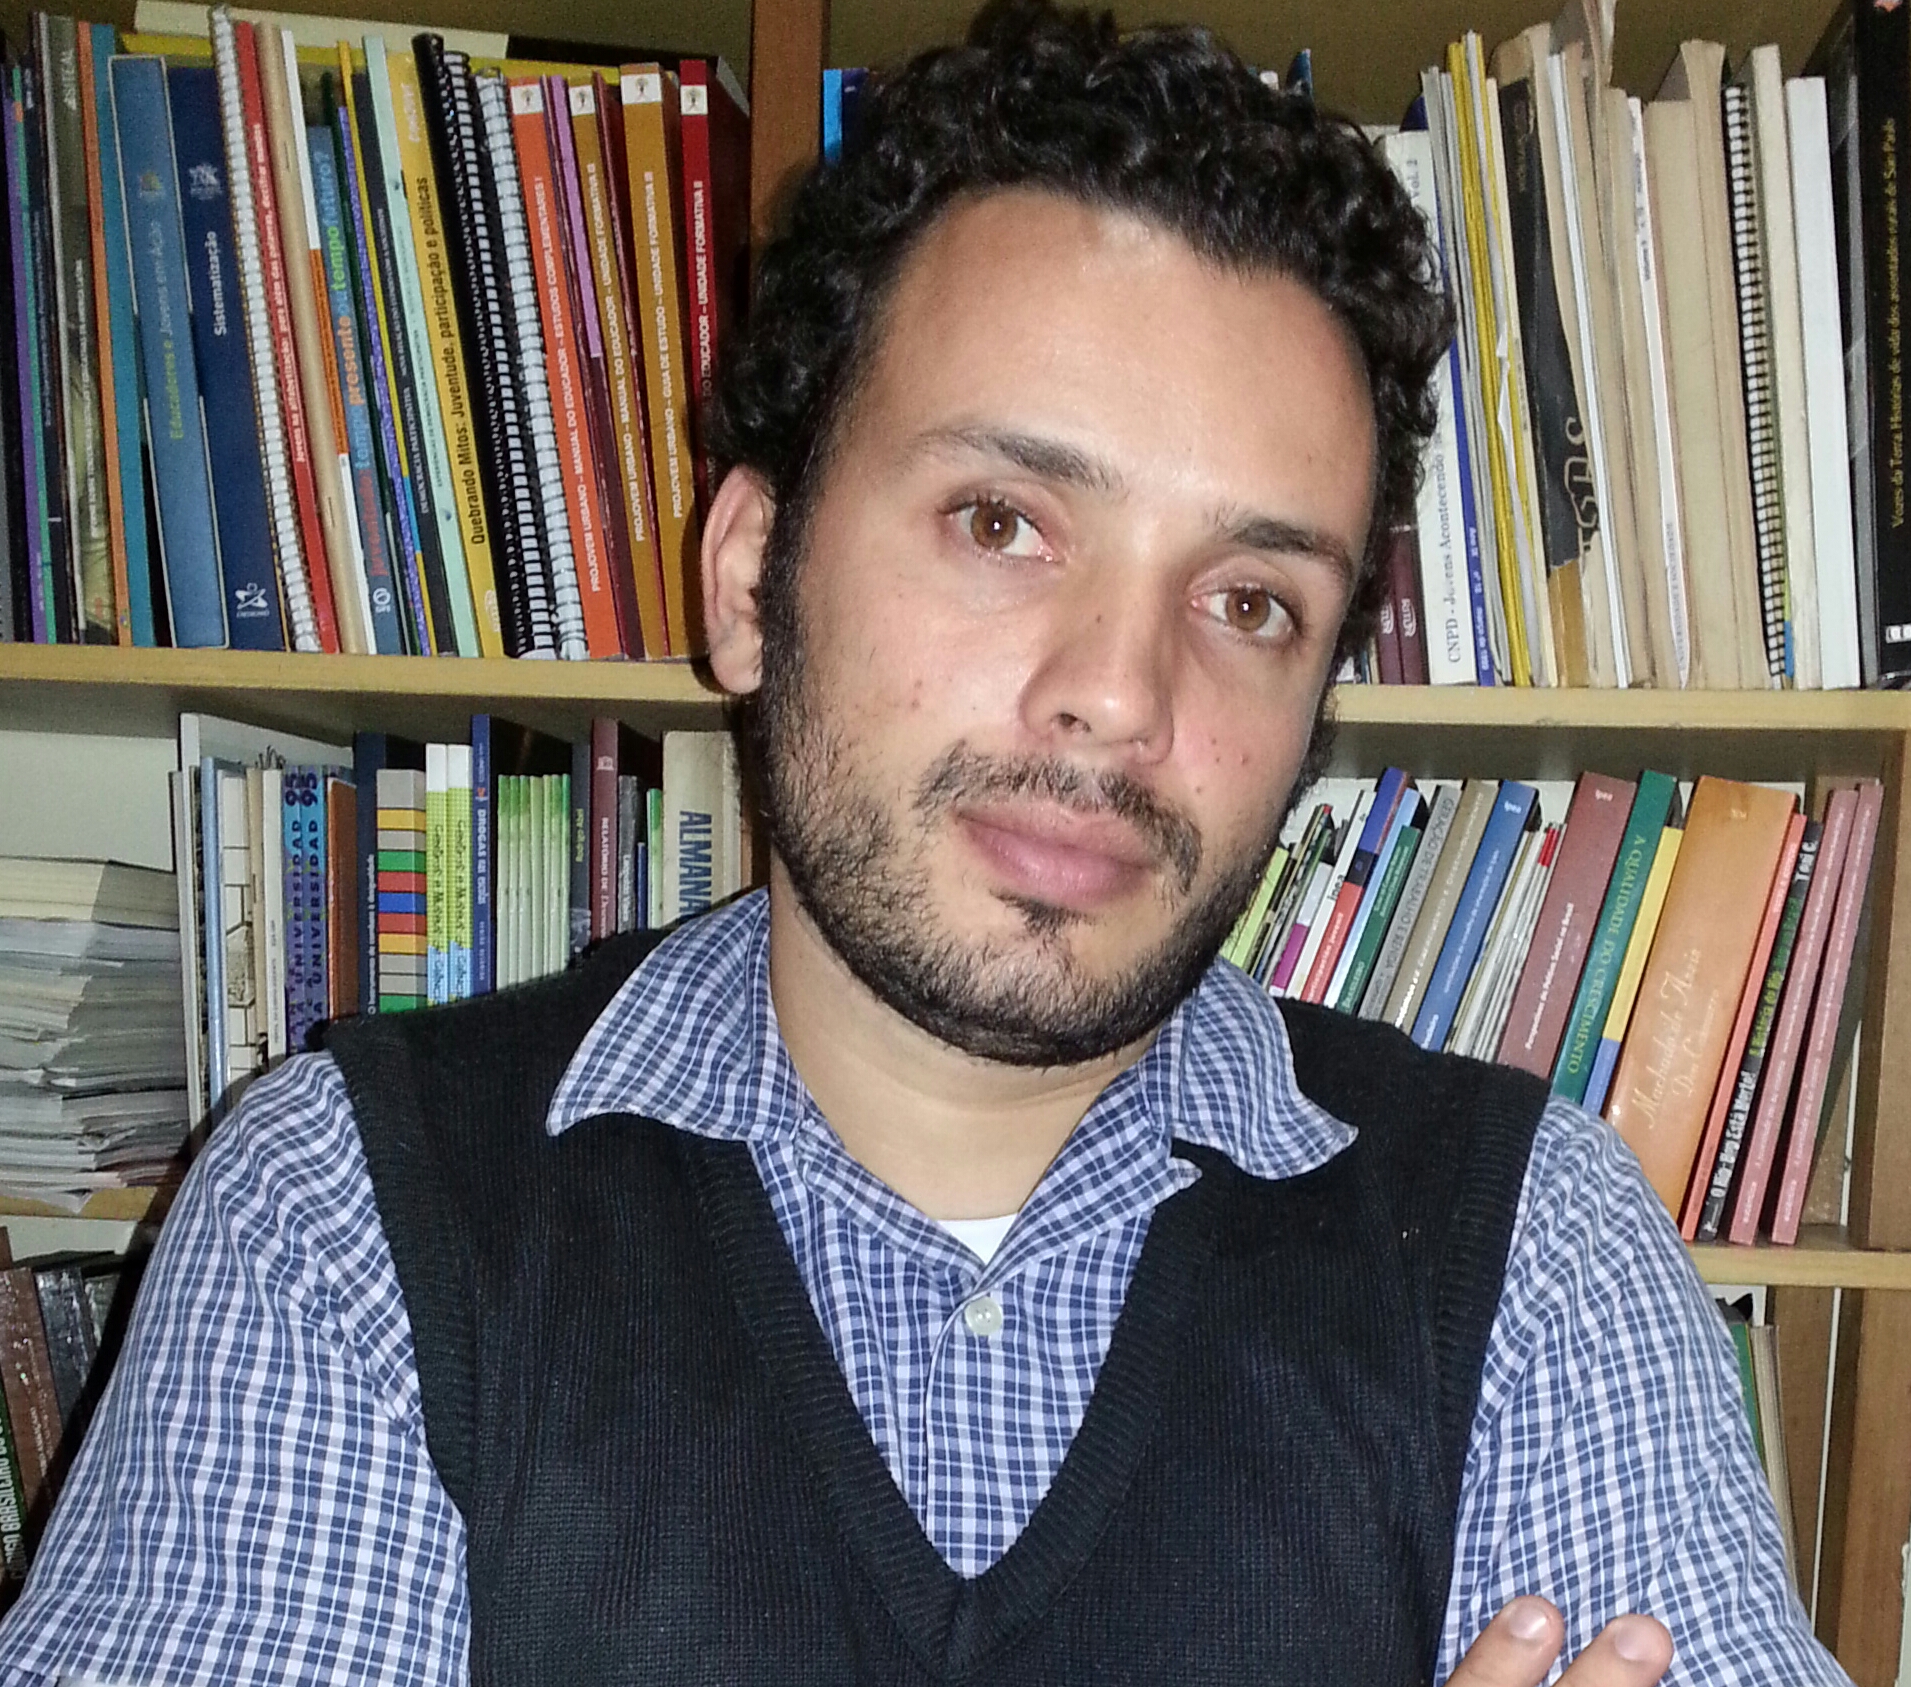 Coordenador Executivo do Projeto: Euzébio Jorge Silveira de Sousa - euzebio